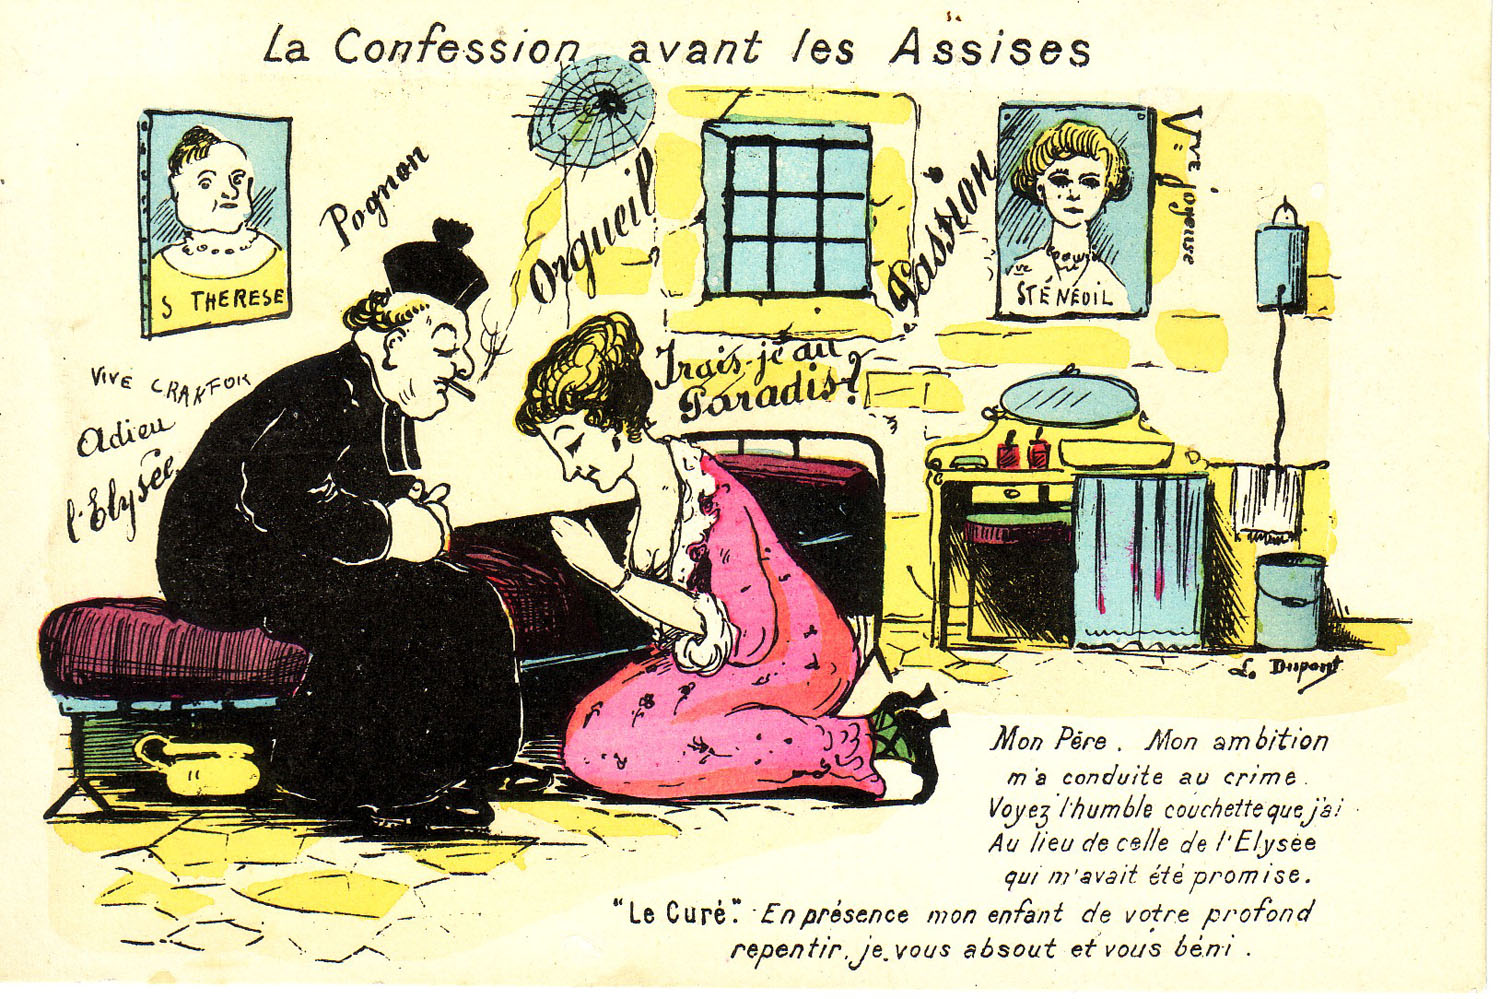 “La Confession avant les Assises” “The Confession before the Assises”